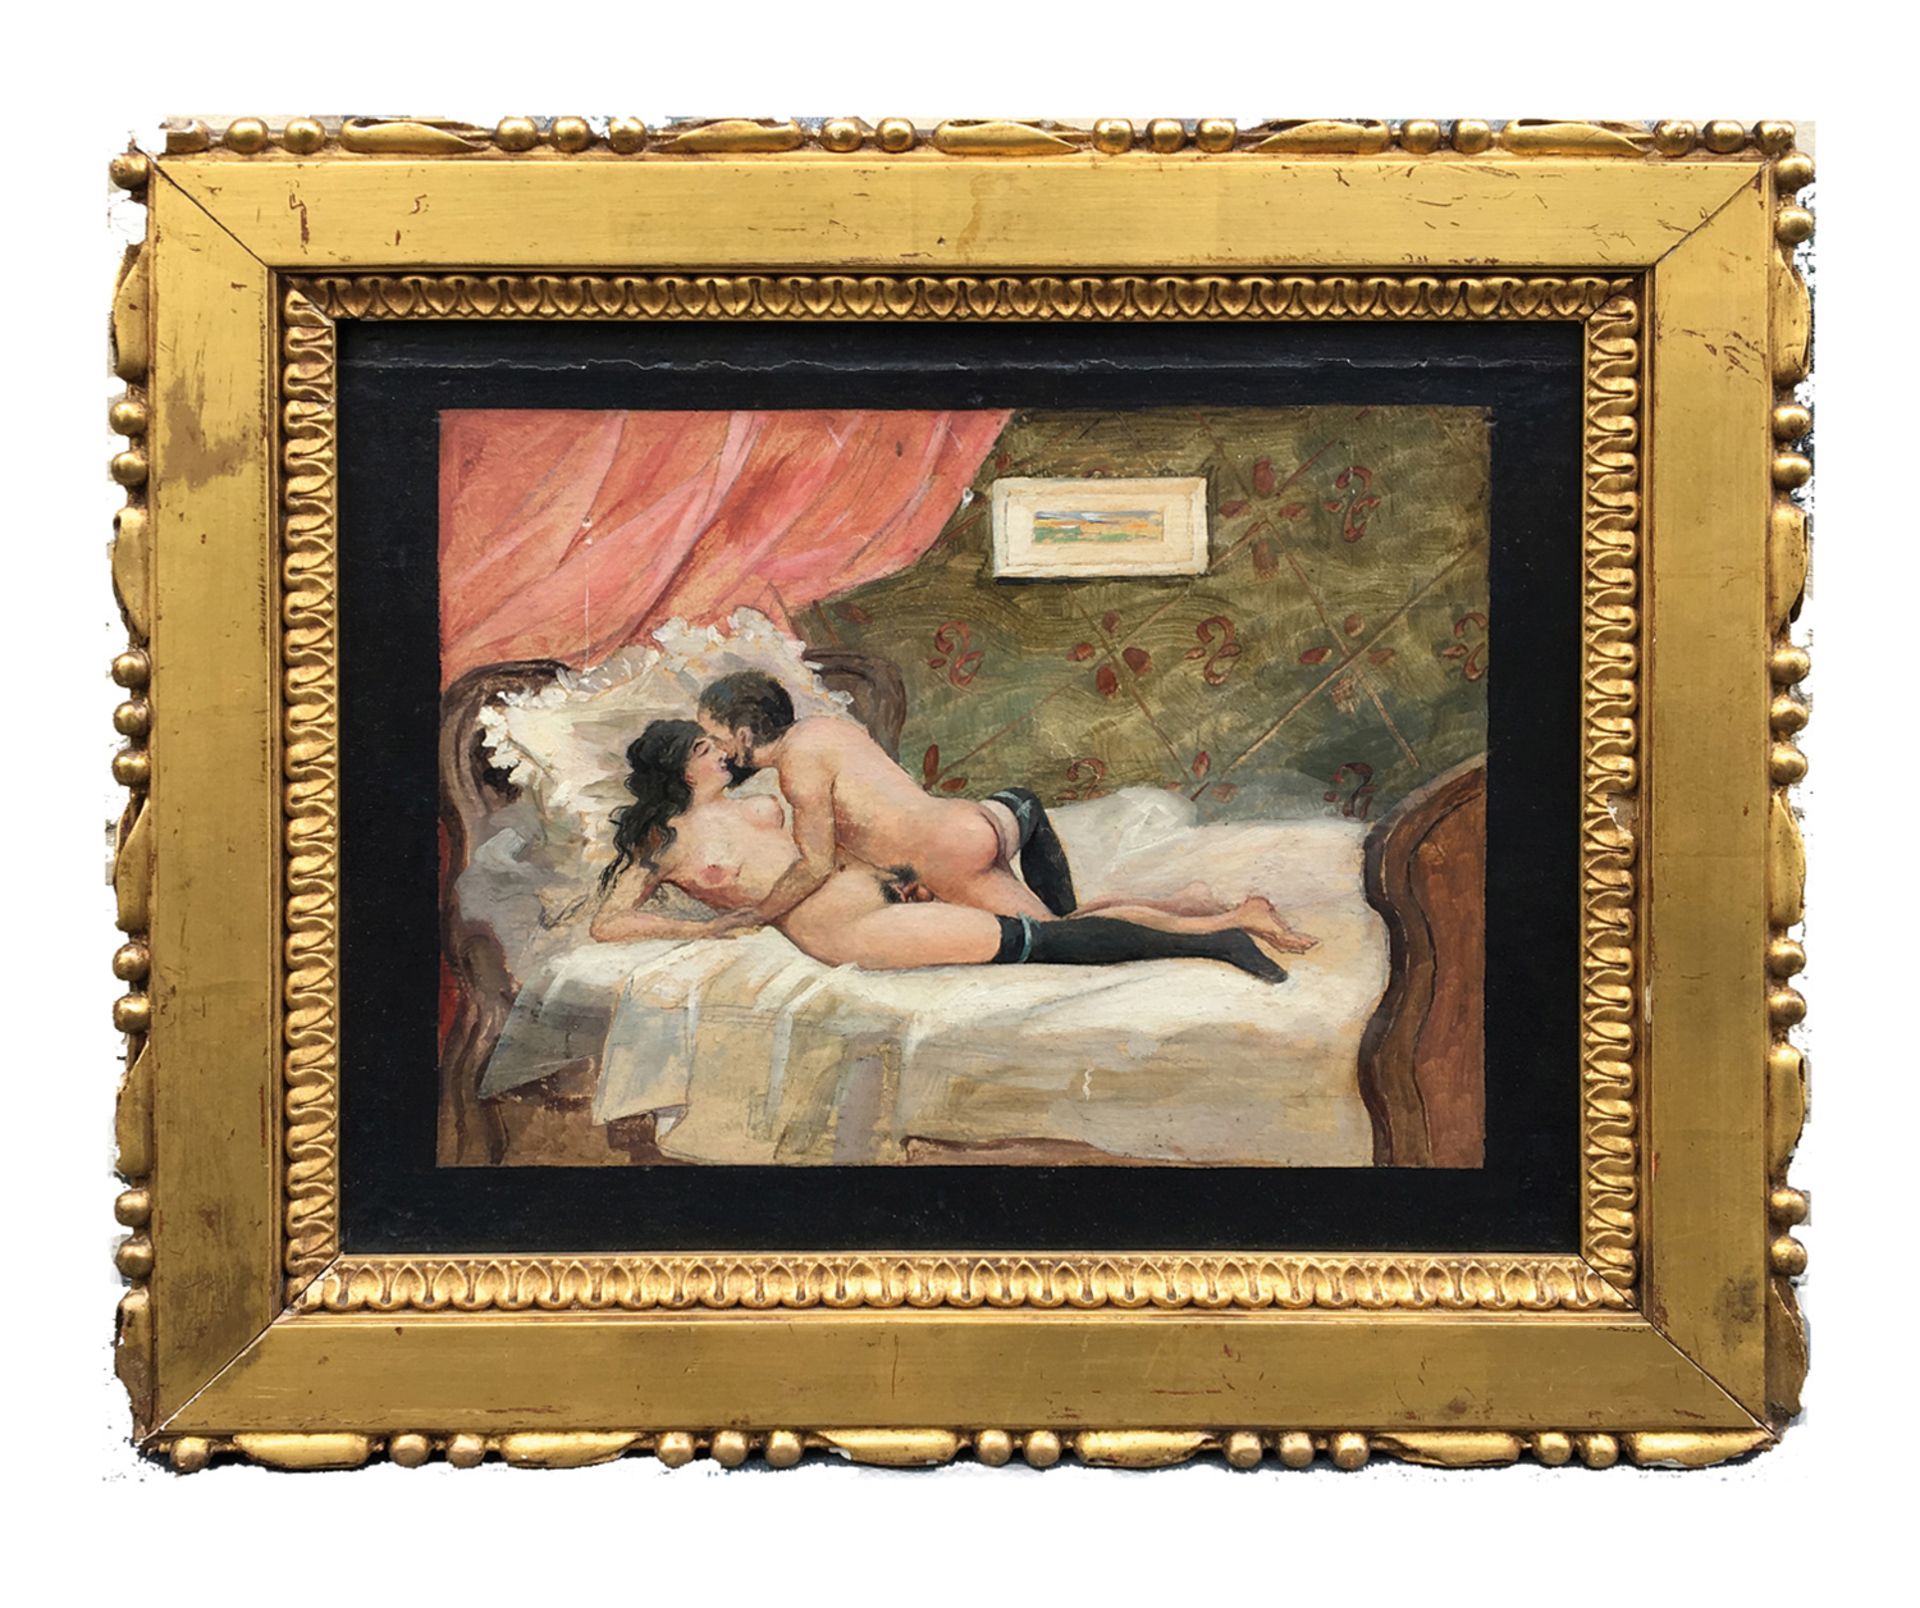 [Artiste non identifié]. Les Bas noirs, vers 1900. Huile sur toile, 29 x 35 cm. -